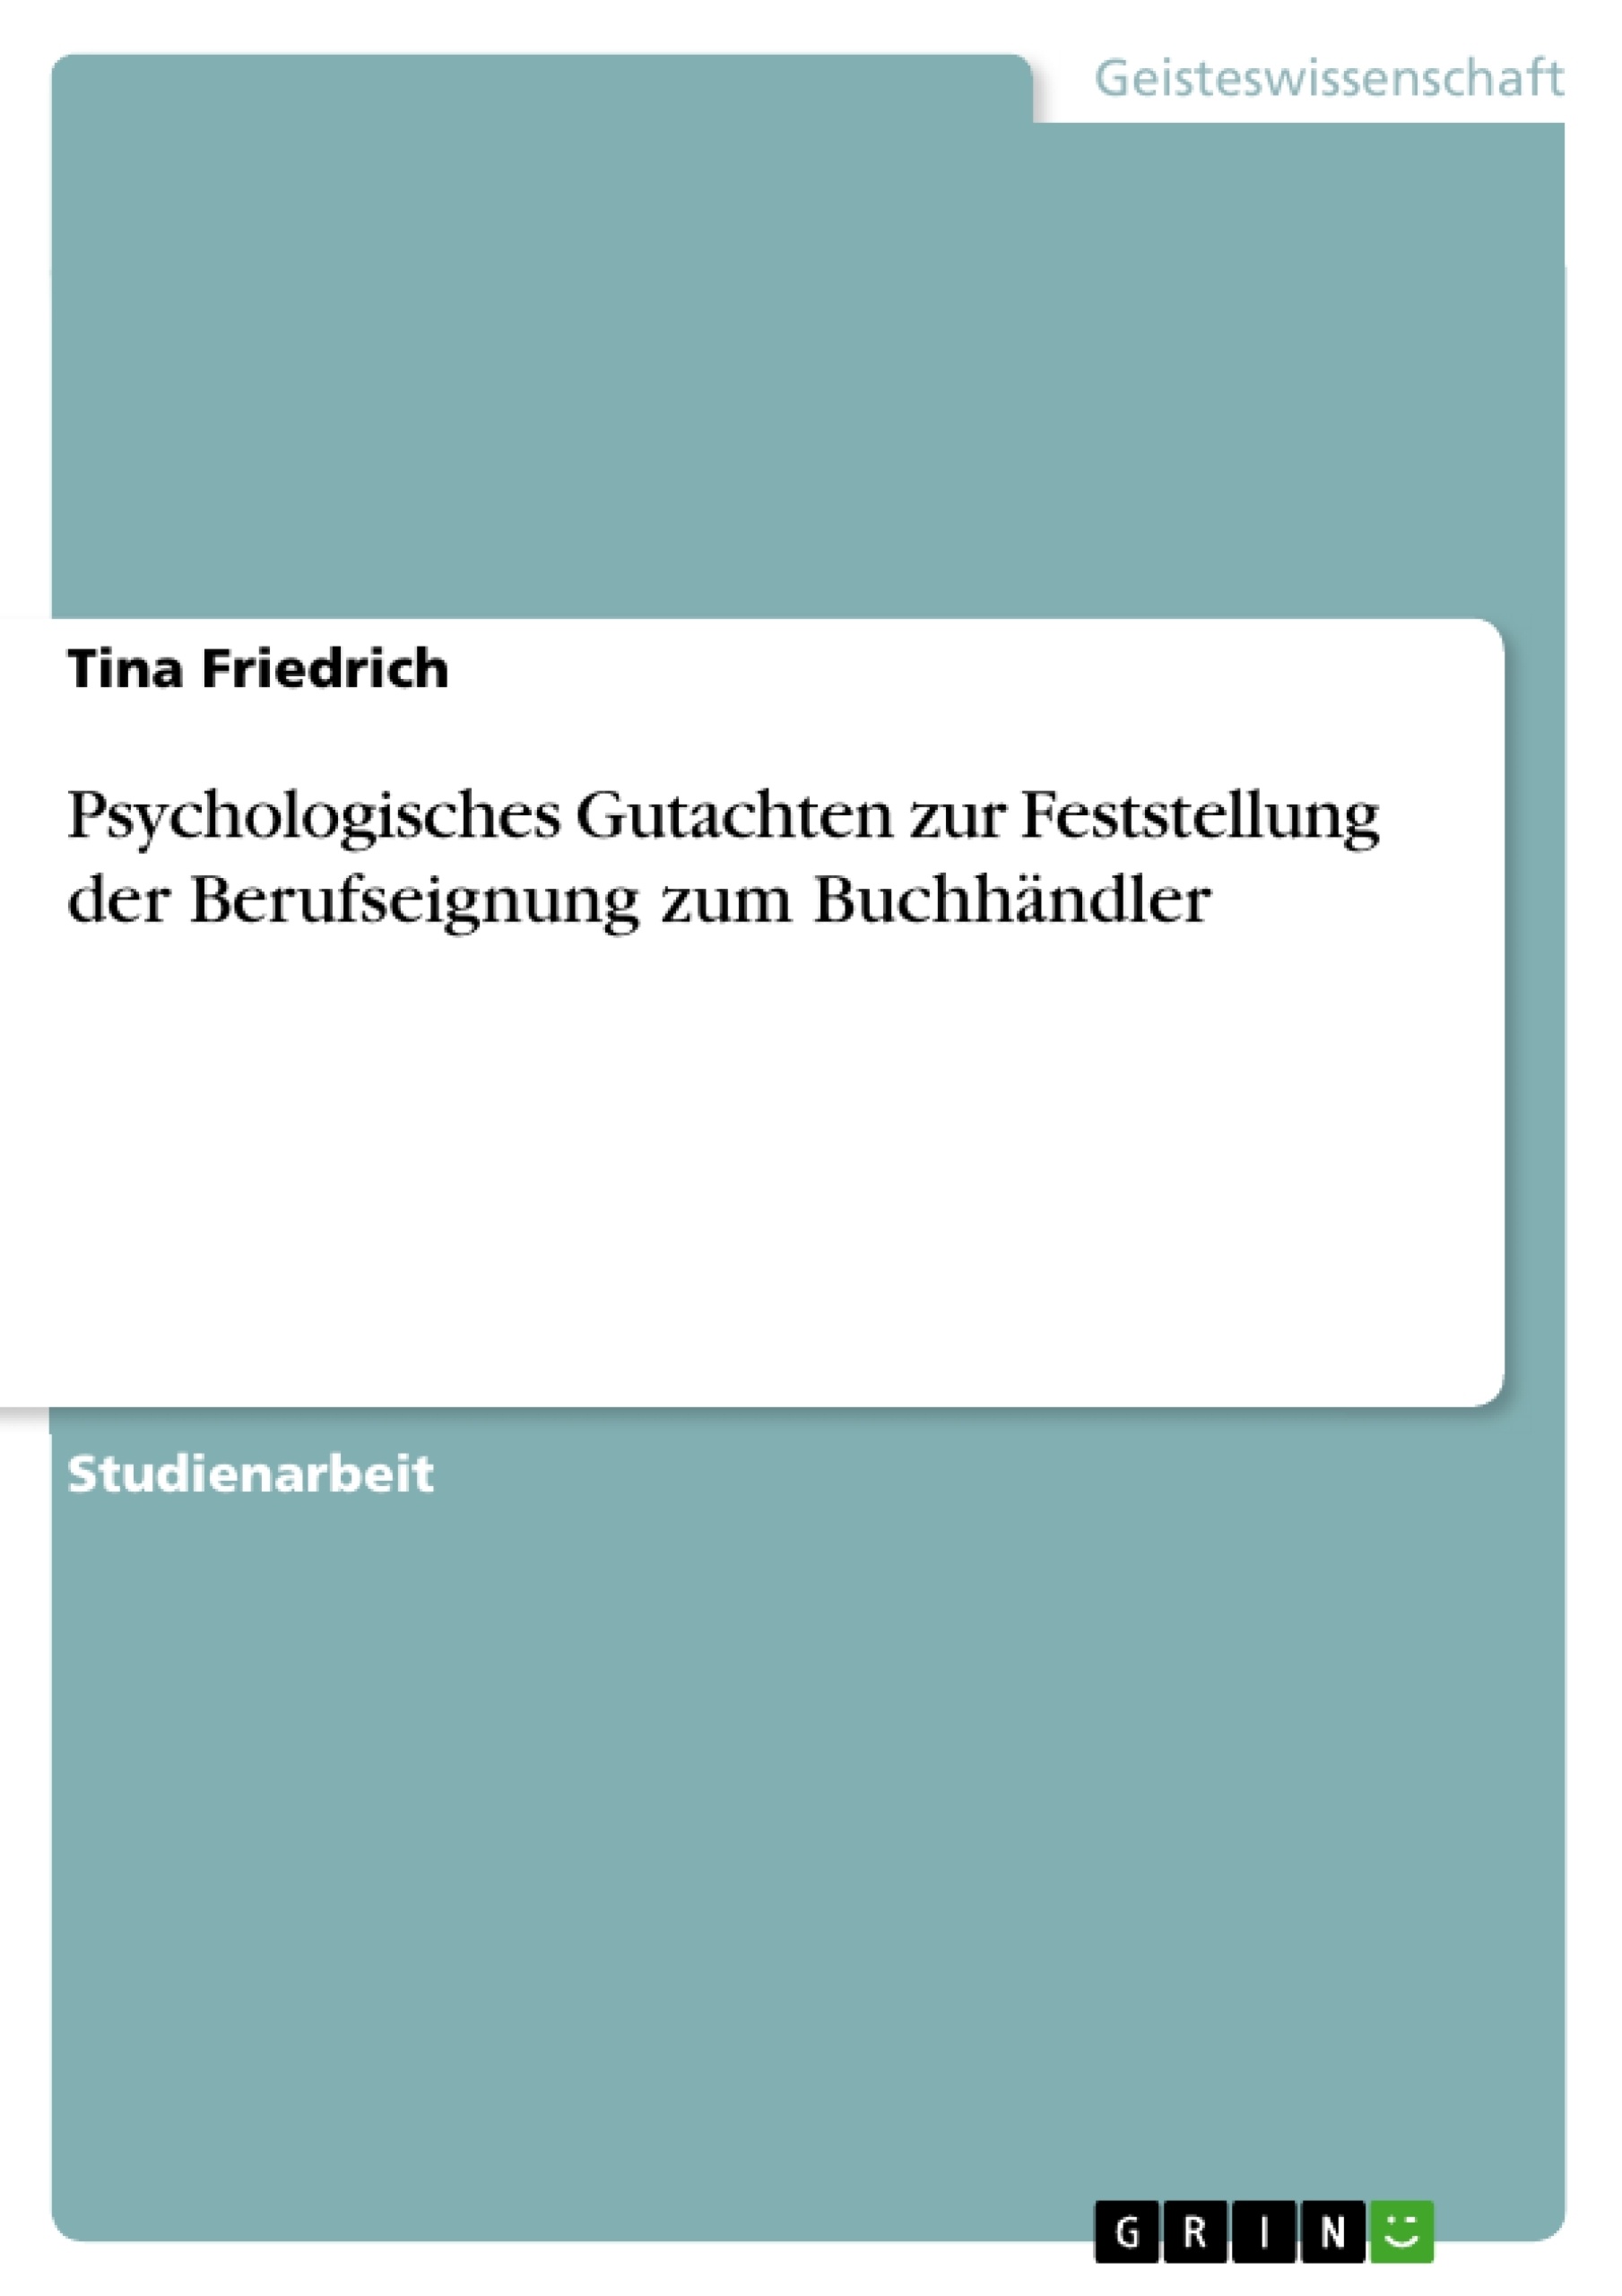 Title: Psychologisches Gutachten zur Feststellung der Berufseignung zum Buchhändler